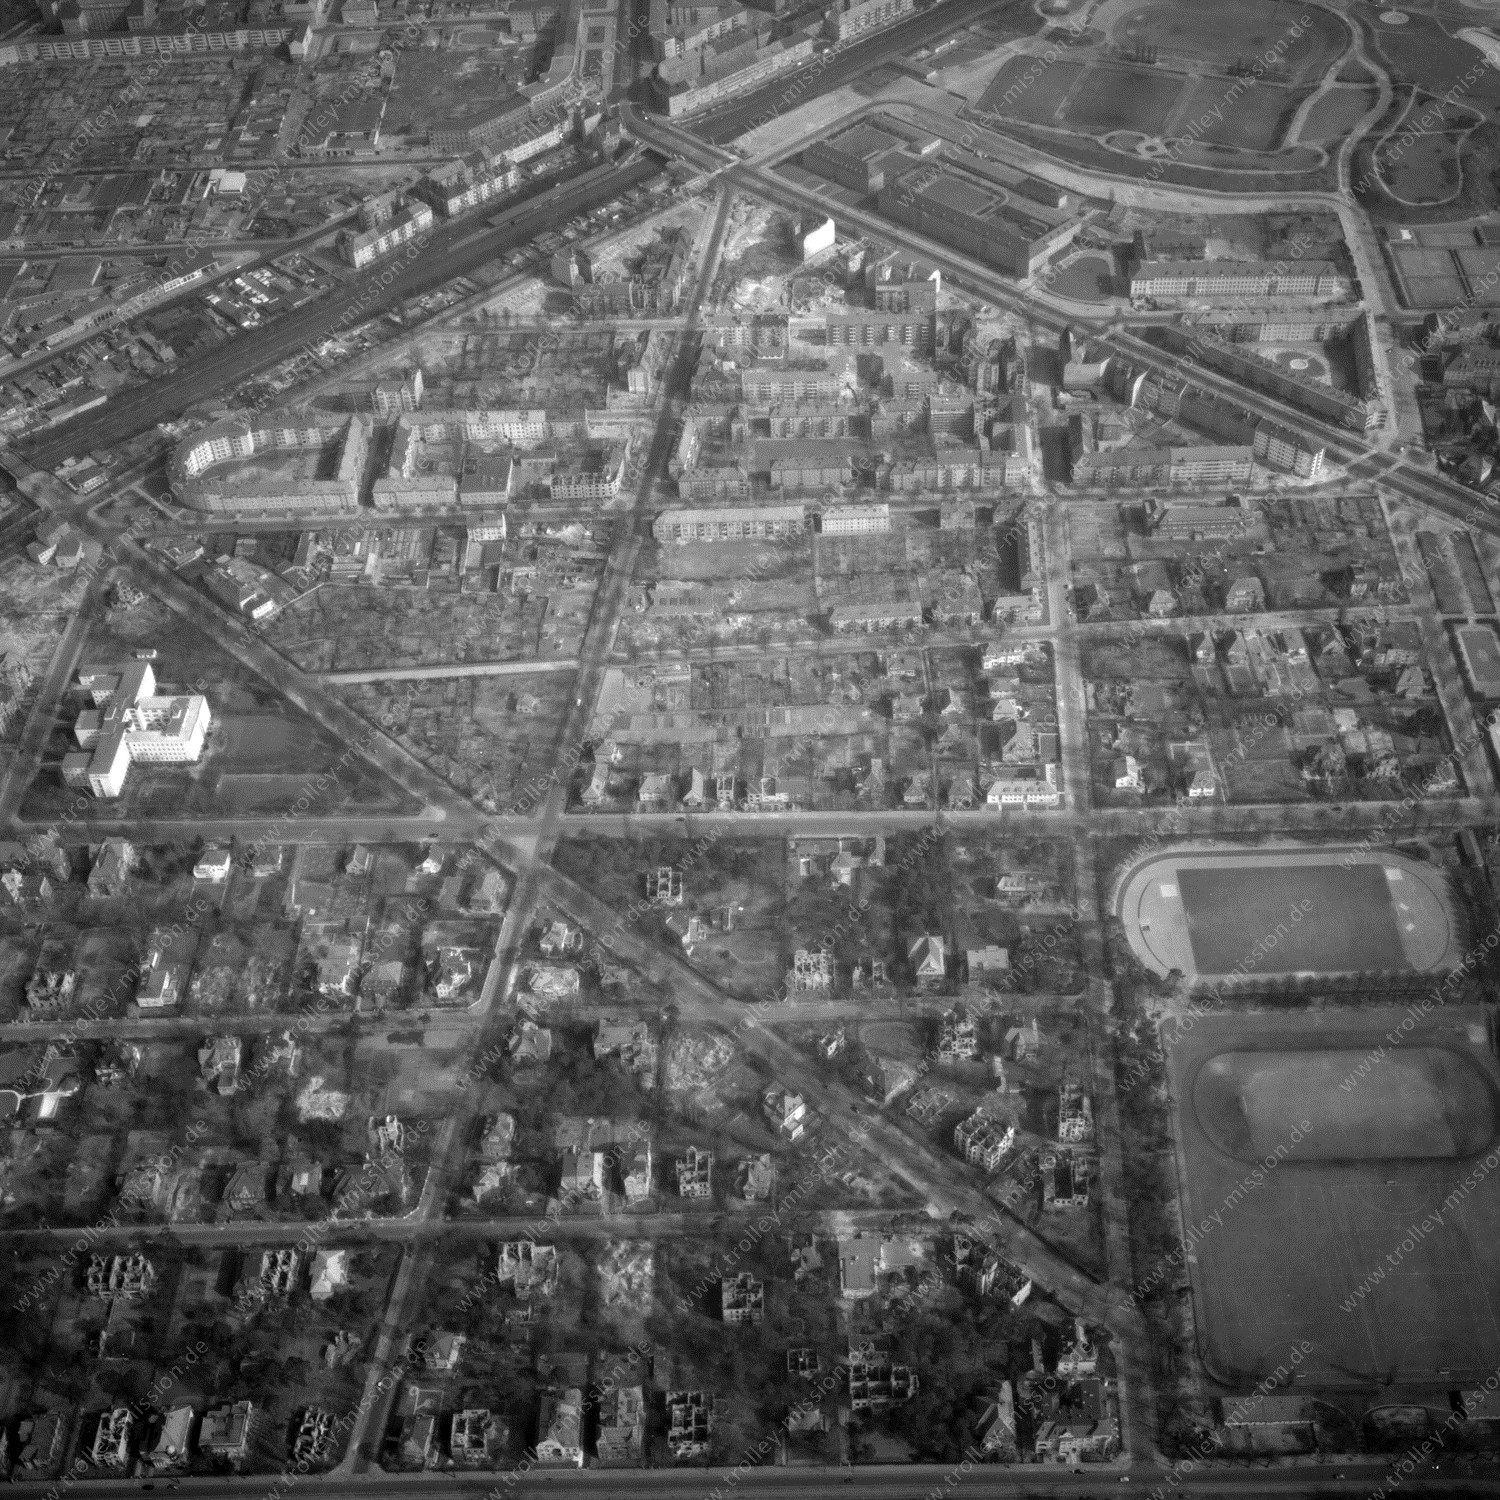 Alte Fotos und Luftbilder von Berlin - Luftbildaufnahme Nr. 04 - Historische Luftaufnahmen von West-Berlin aus dem Jahr 1954 - Flugstrecke Alpha